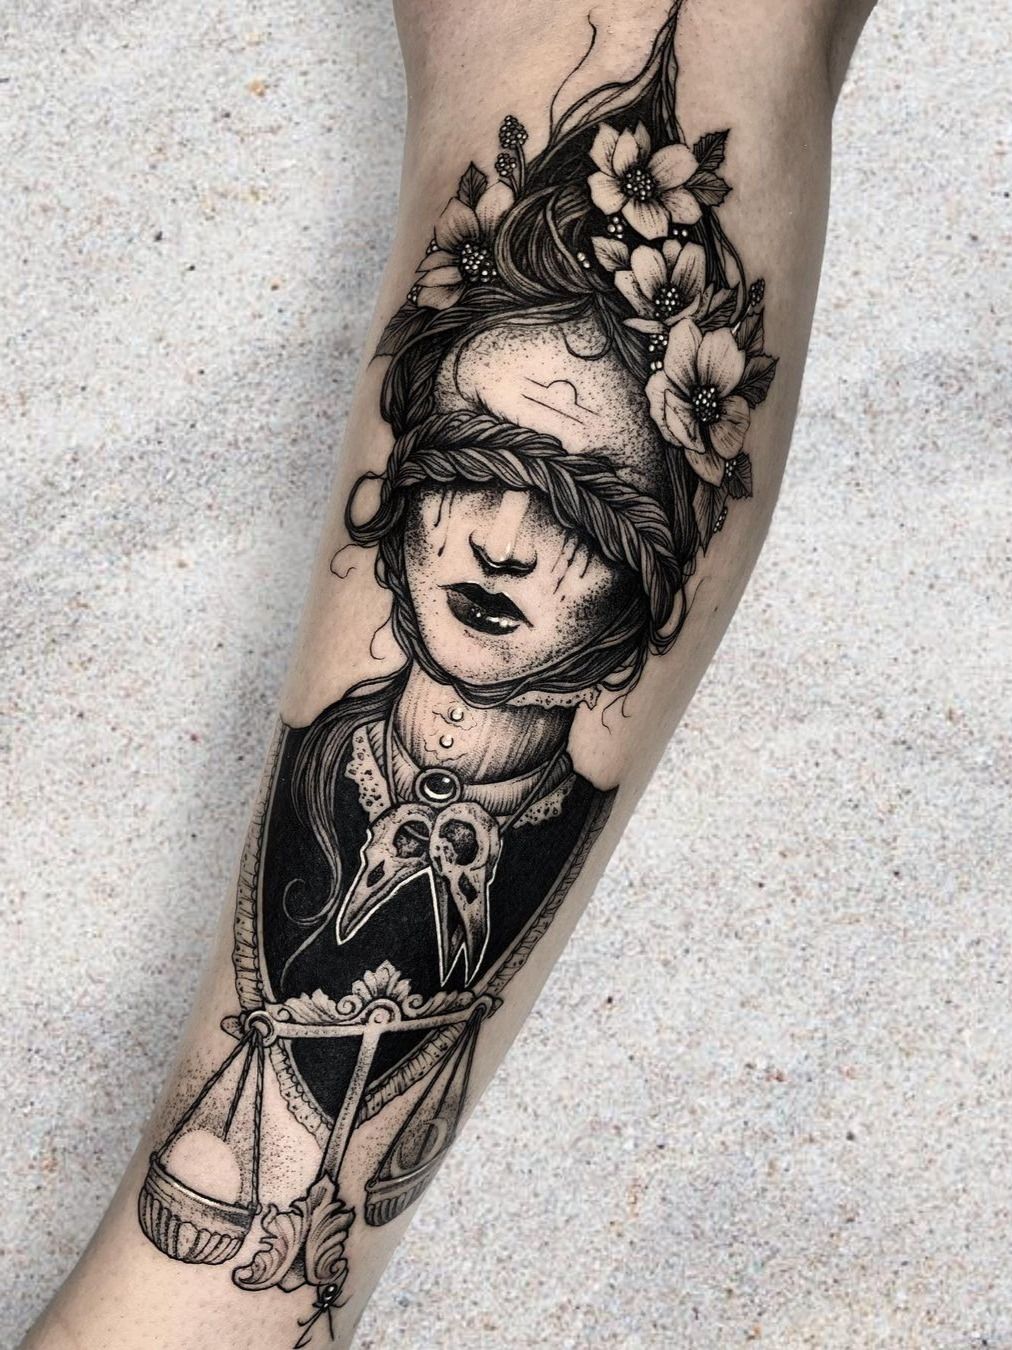 Girl With Lettering Libra tatuagen Zodiac With Flowers On Half Sleeve Sleeve  tatuagens foto compartilhado por Betsy937  Português de partilha de  imagens imagens